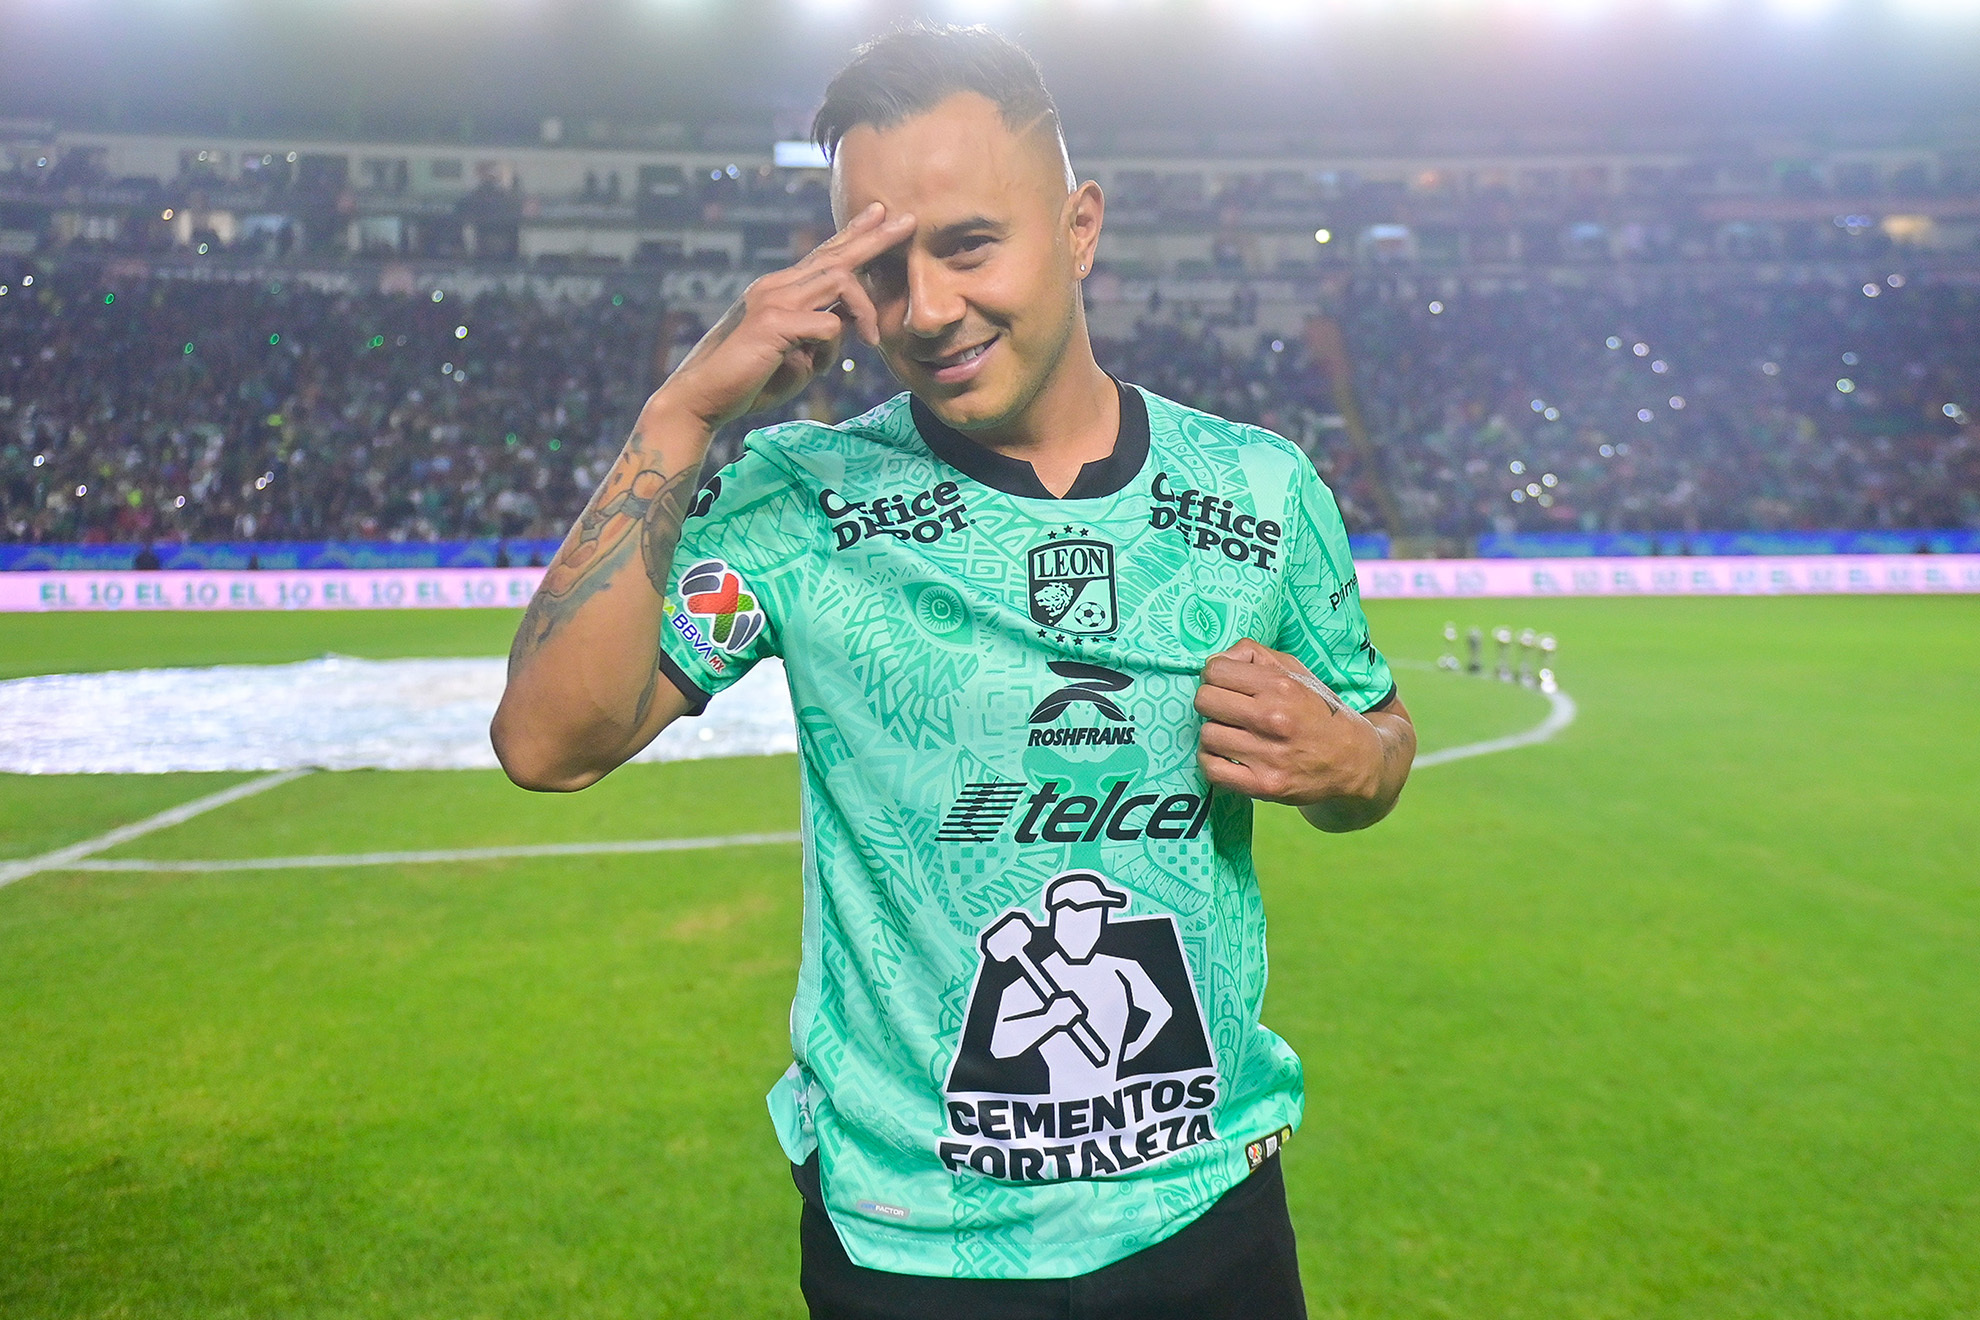 Luis Montes recibió un emotivo homenaje en el Nou Camp. | Imago7